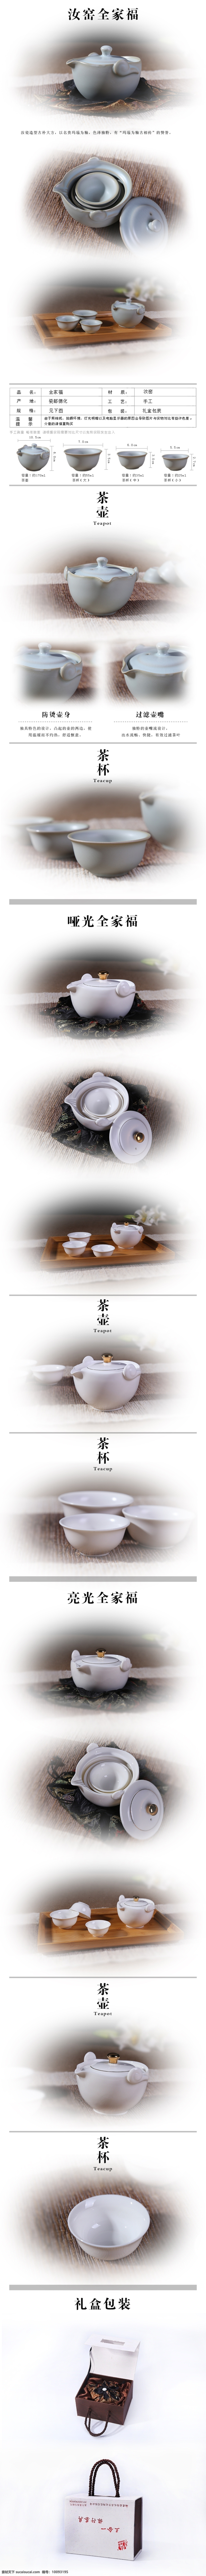 茶具 描述 淘宝 详情 页 模版 详情设计 旅行 天猫